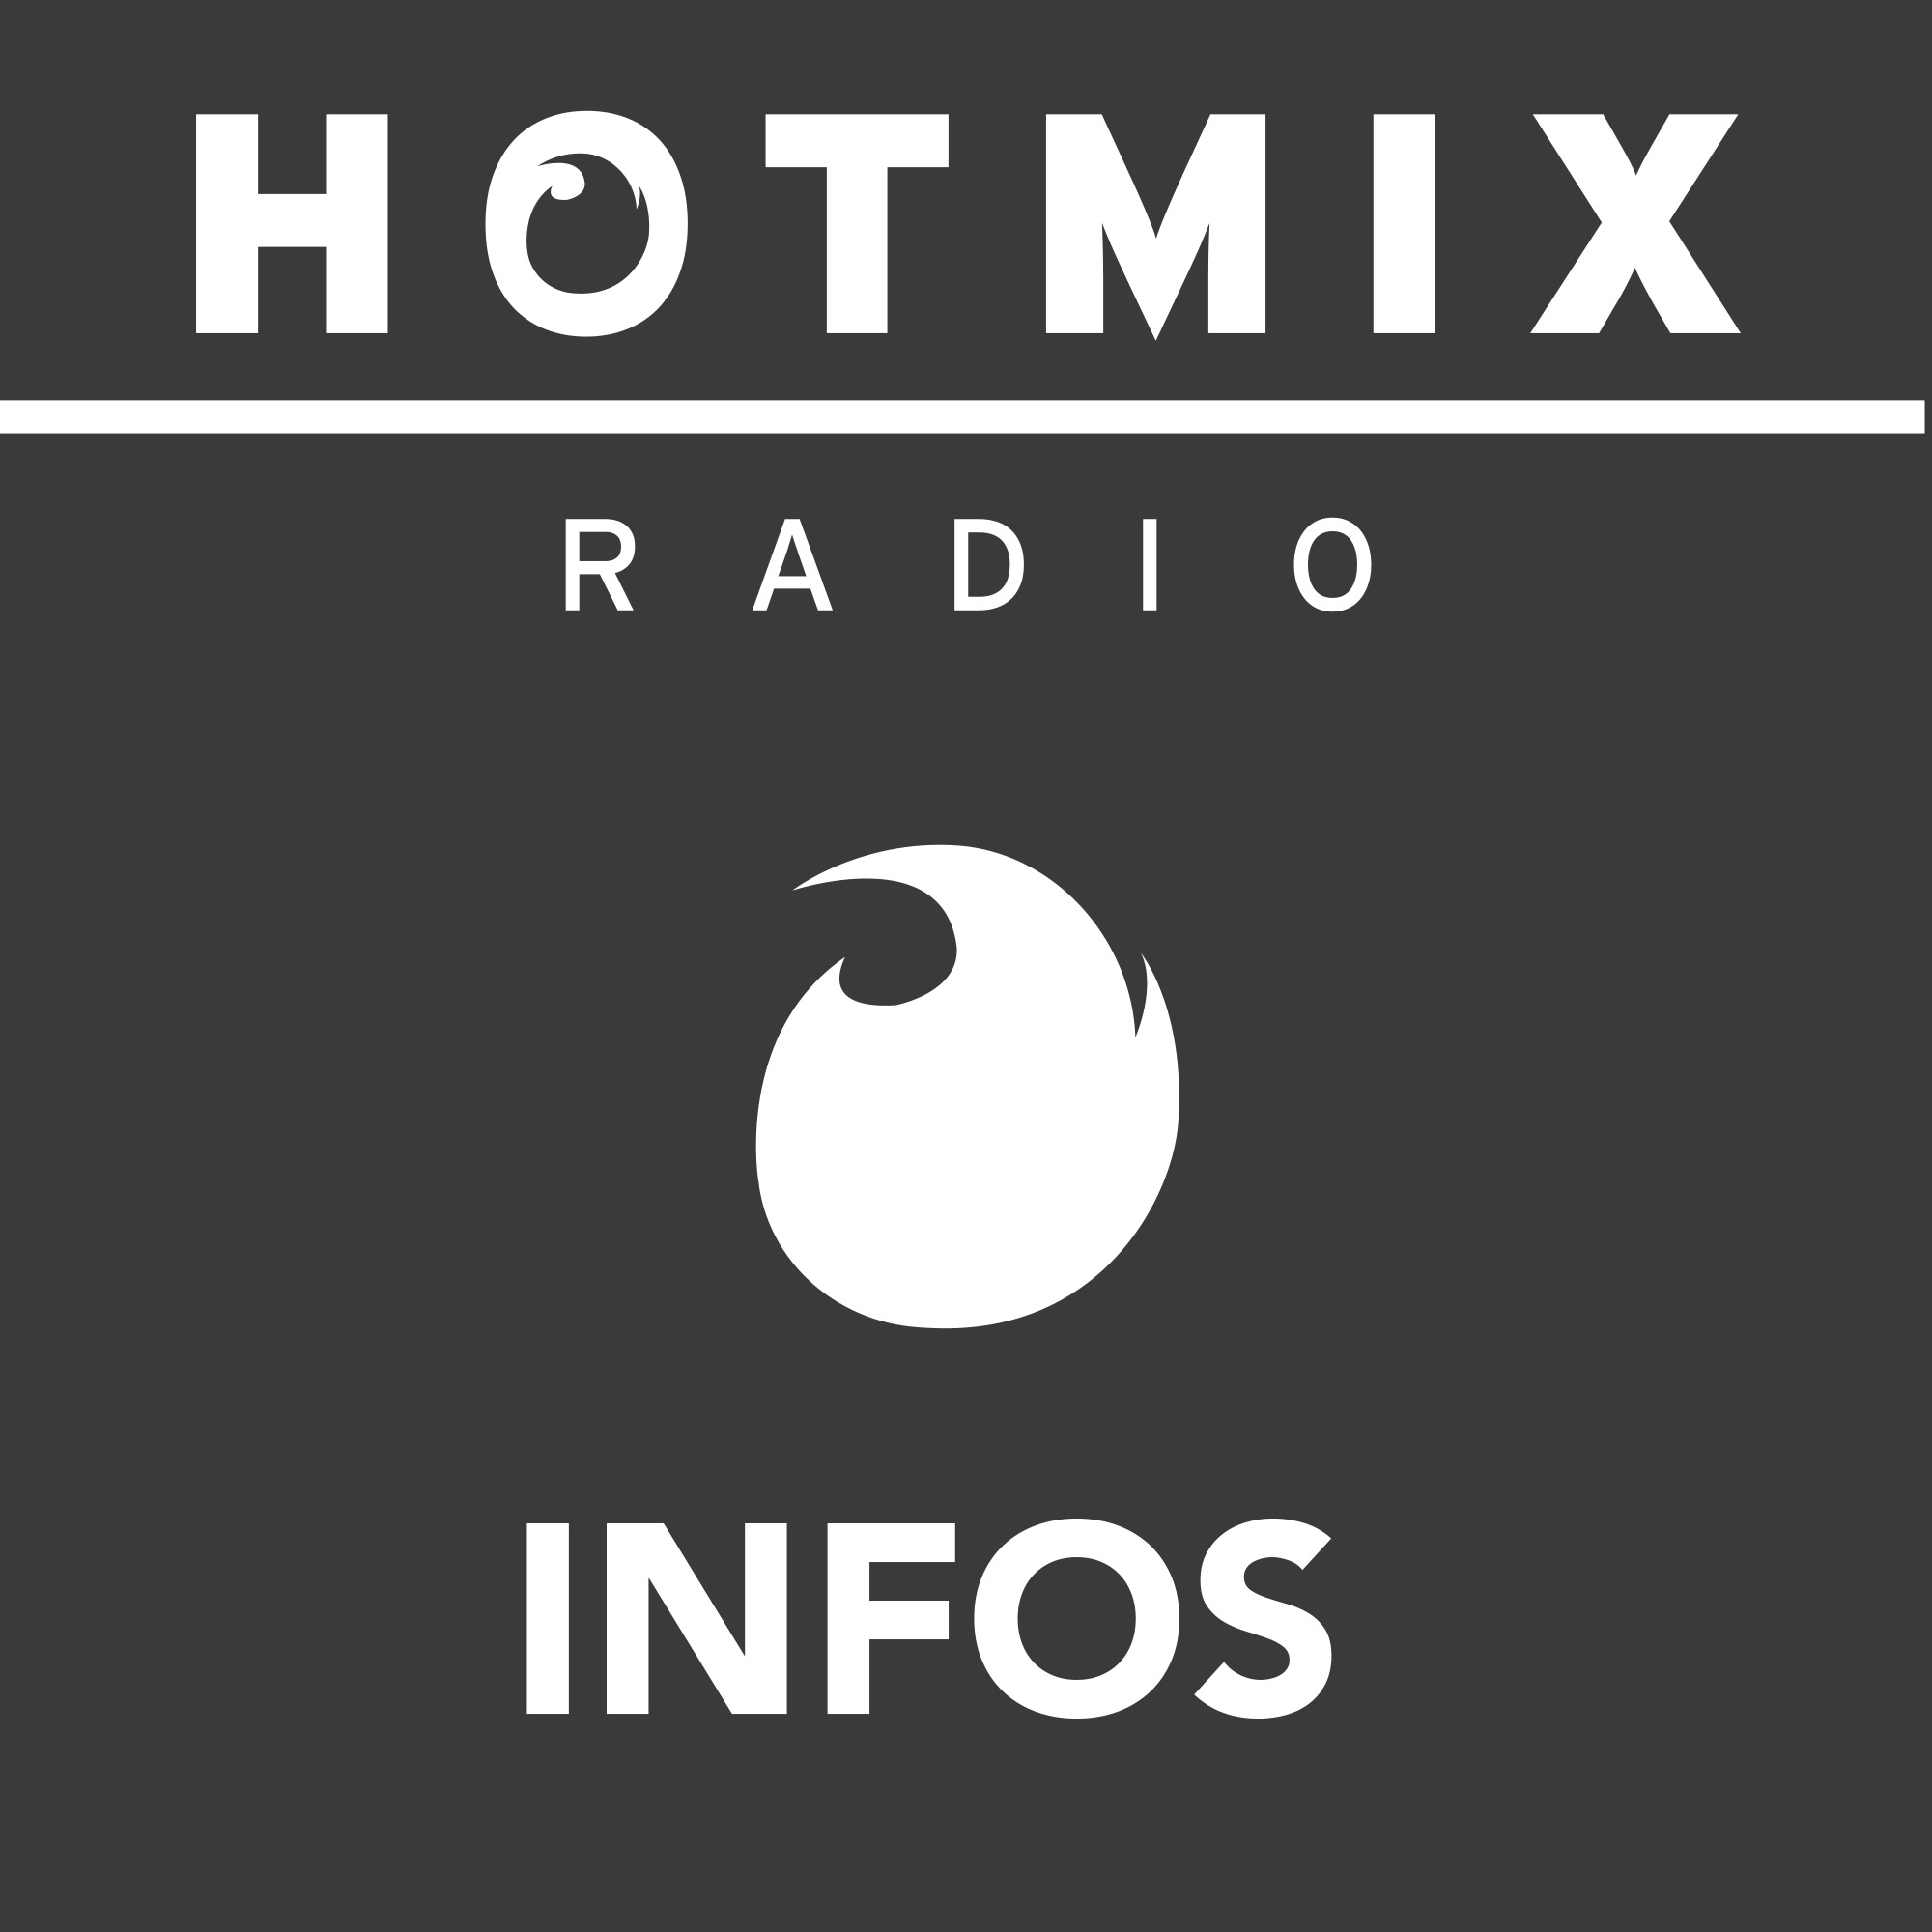 Hotmixradio Infos